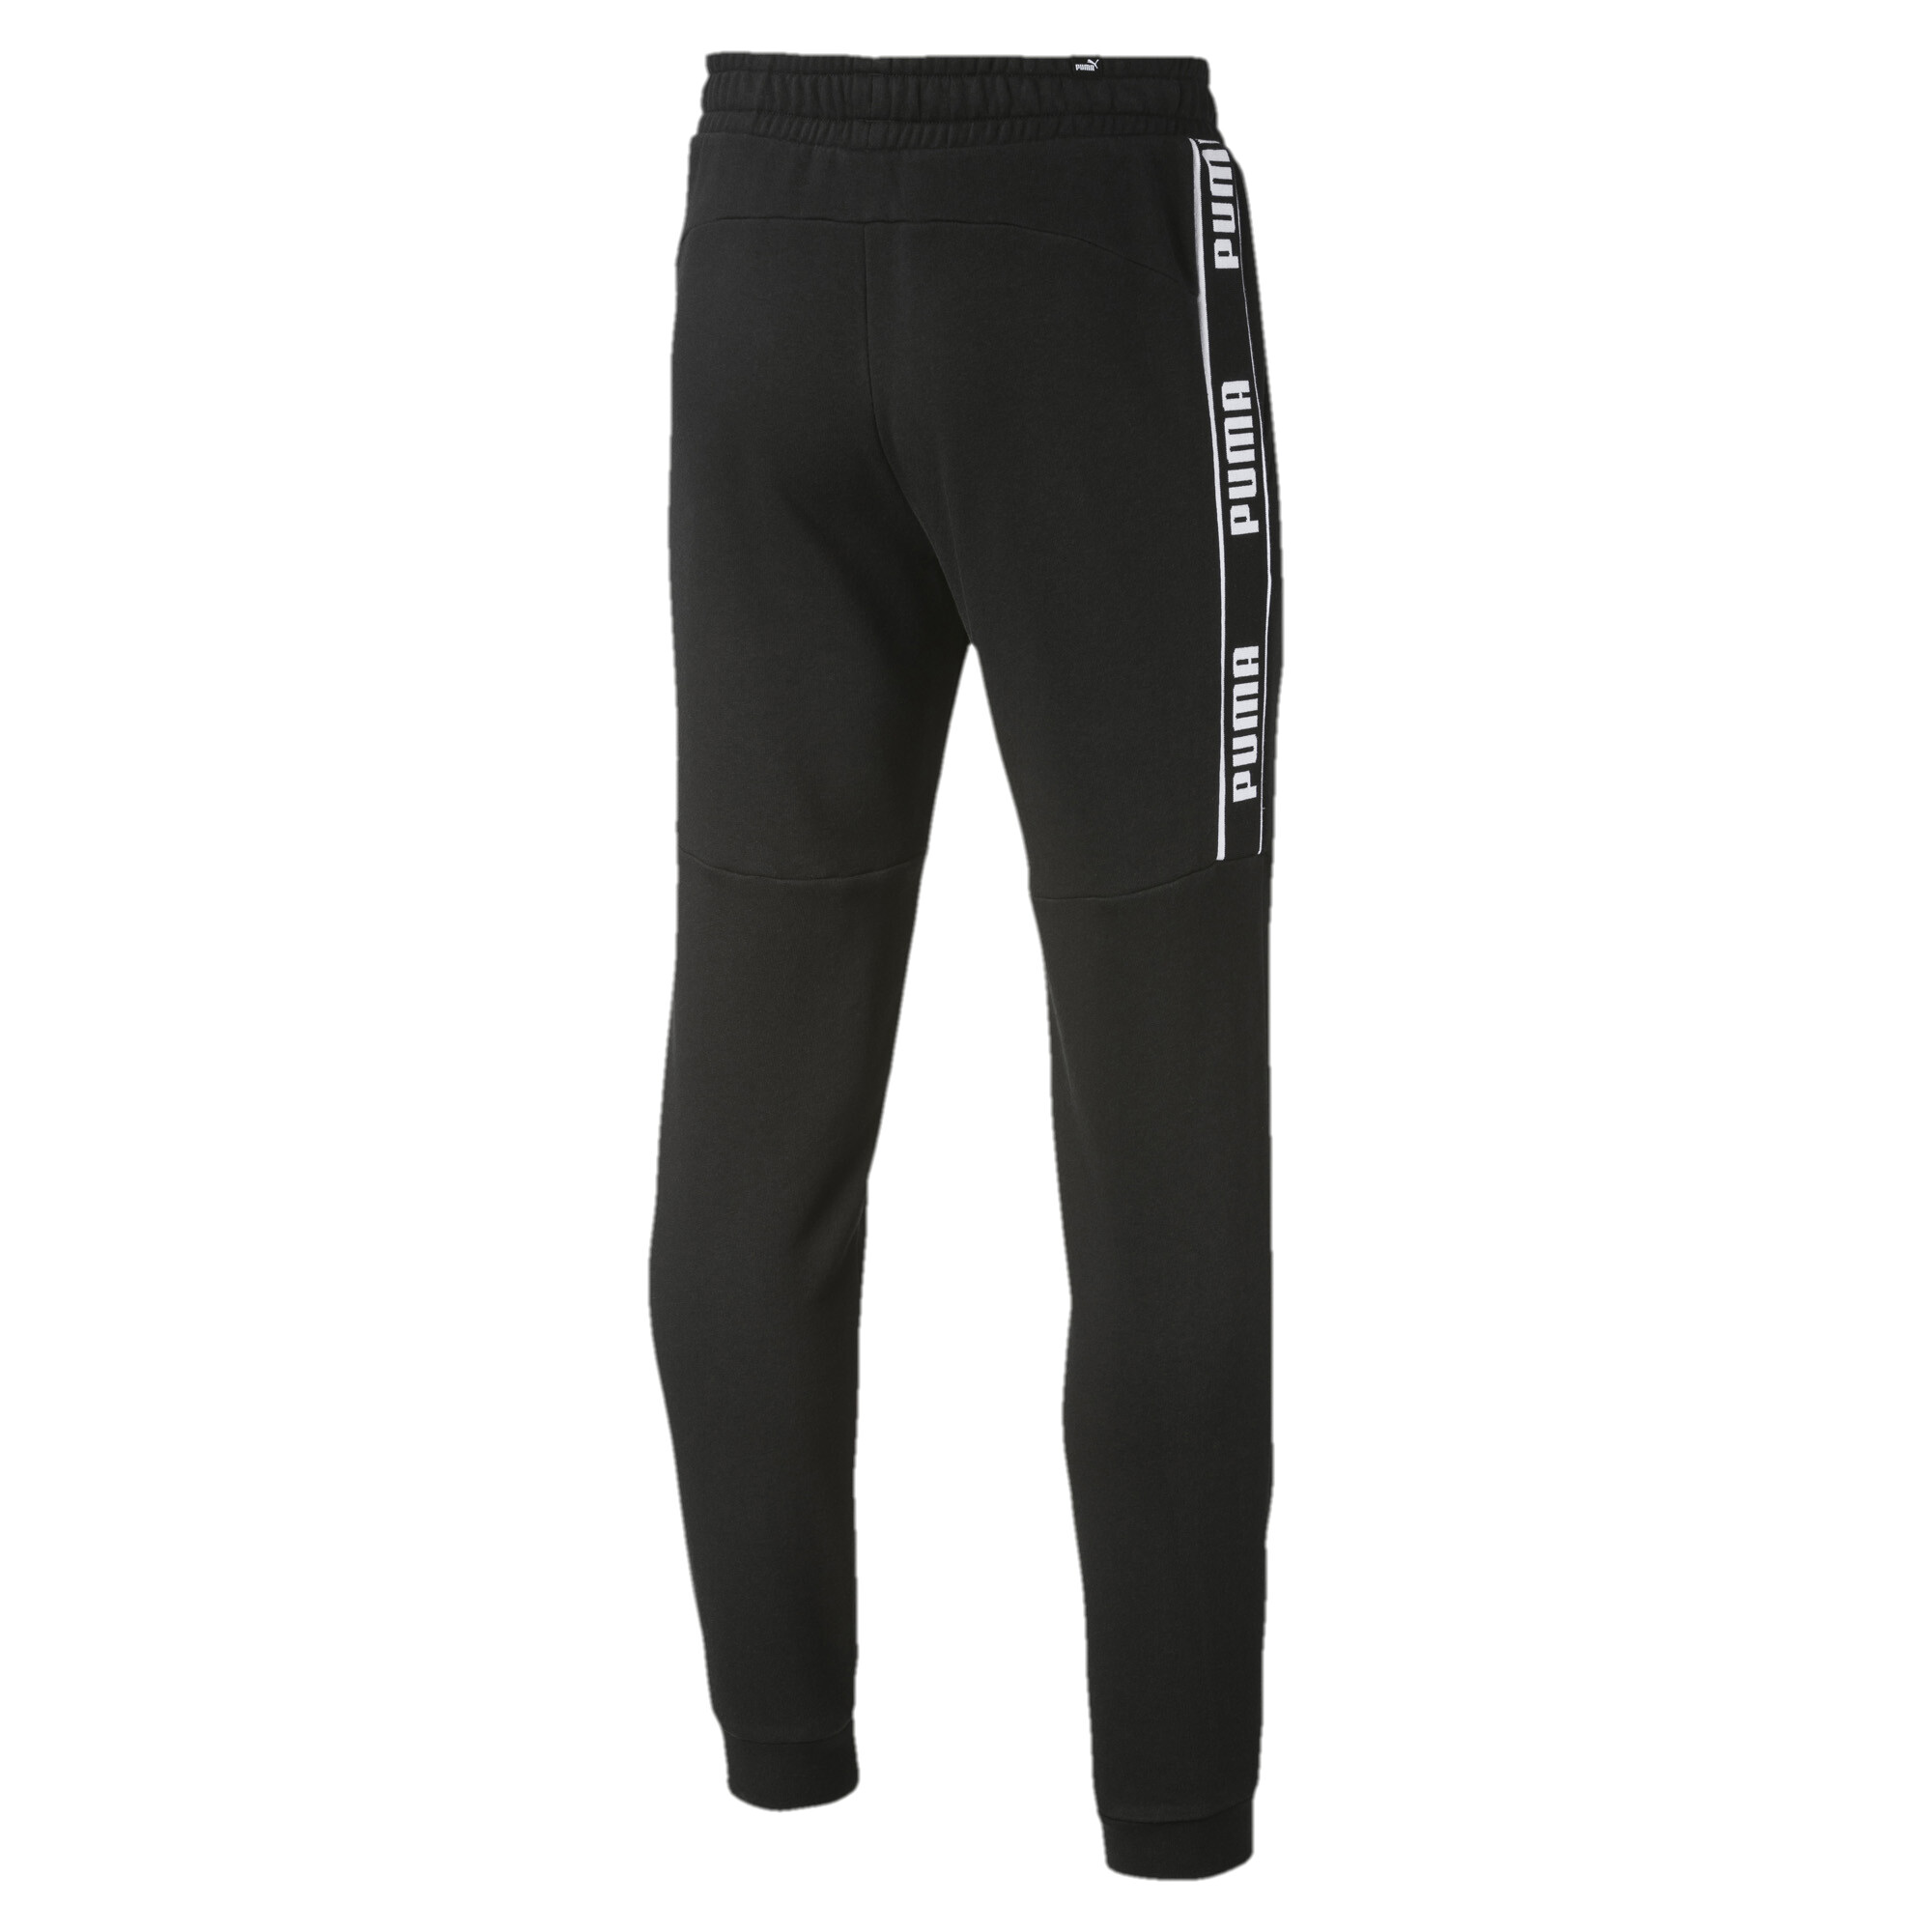 Men's Puma Amplified's Sweatpants, Black, Size L, Clothing